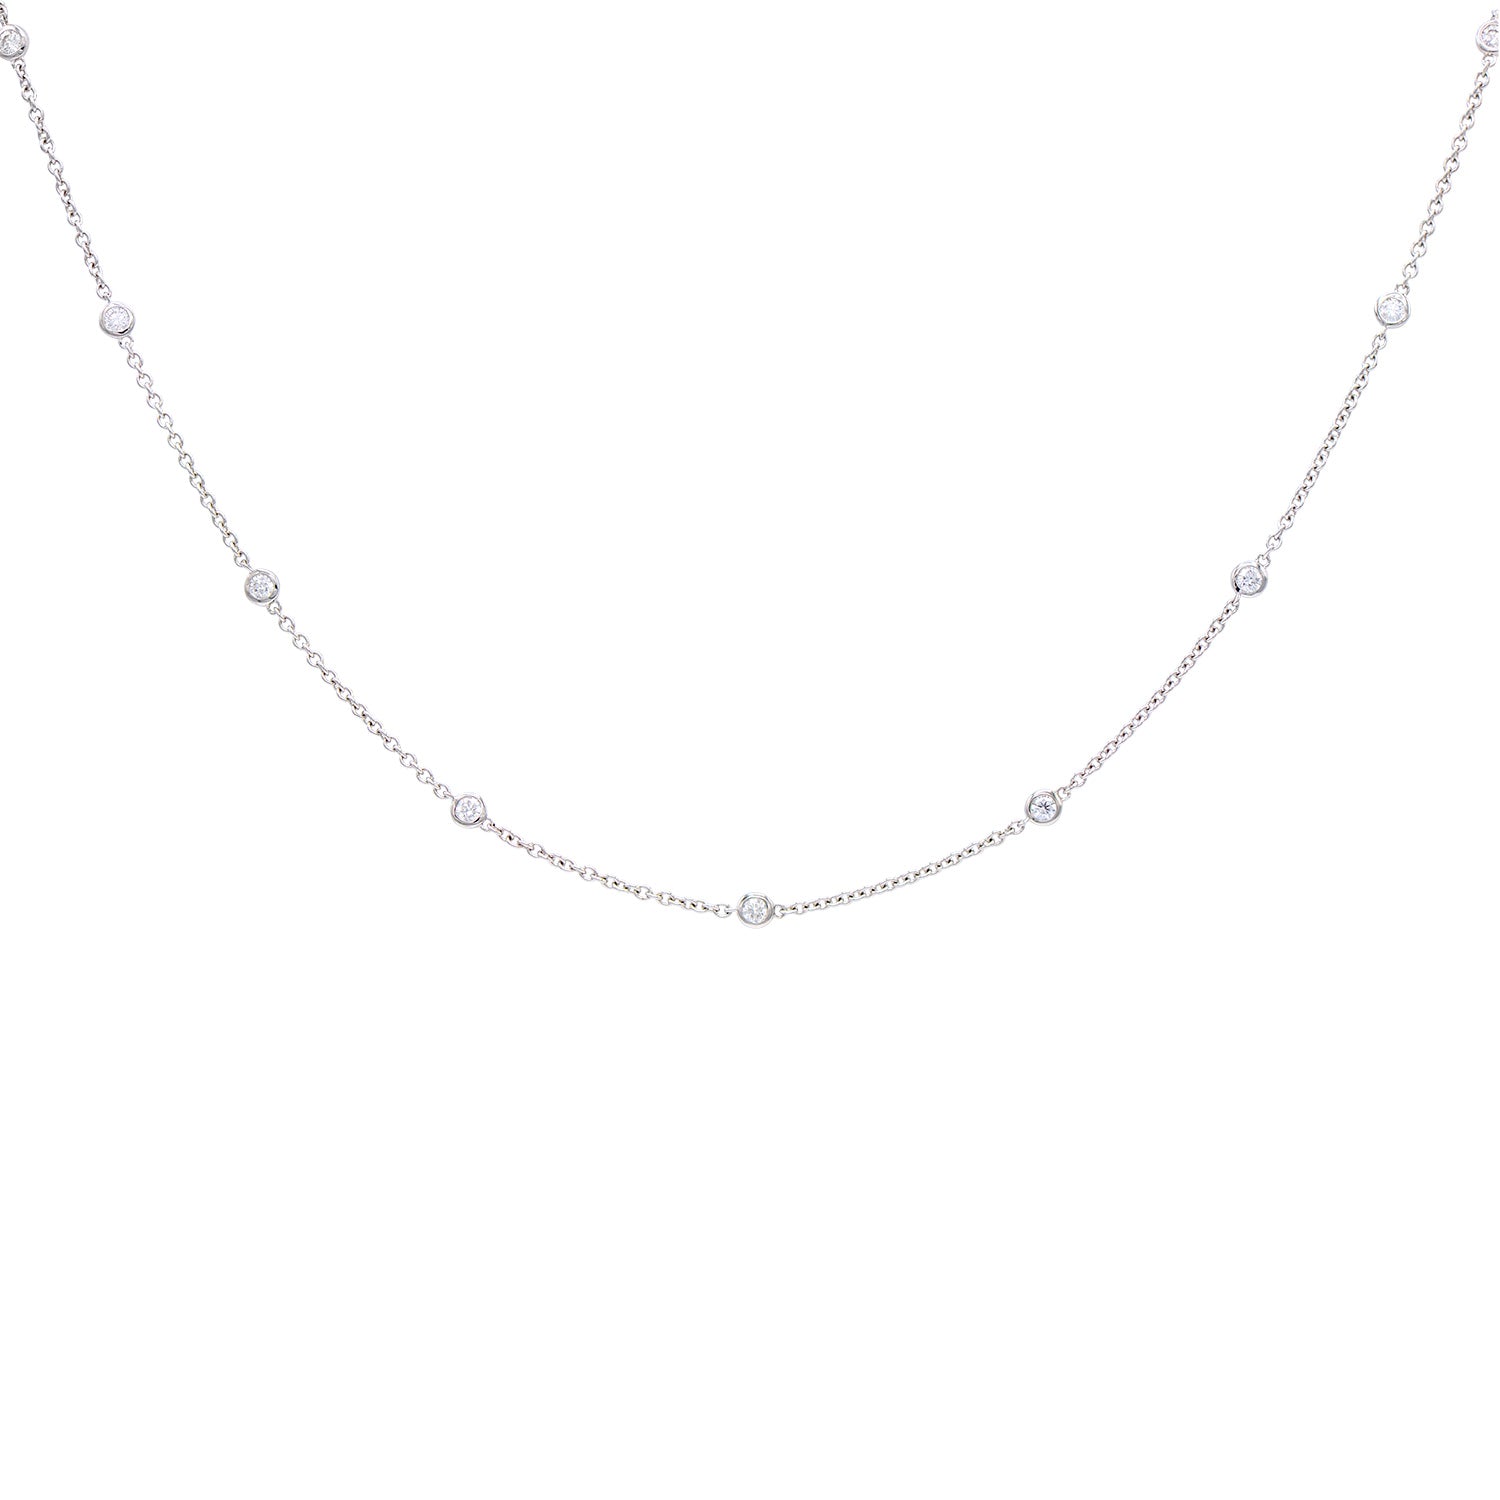 18KW Diamond Necklace